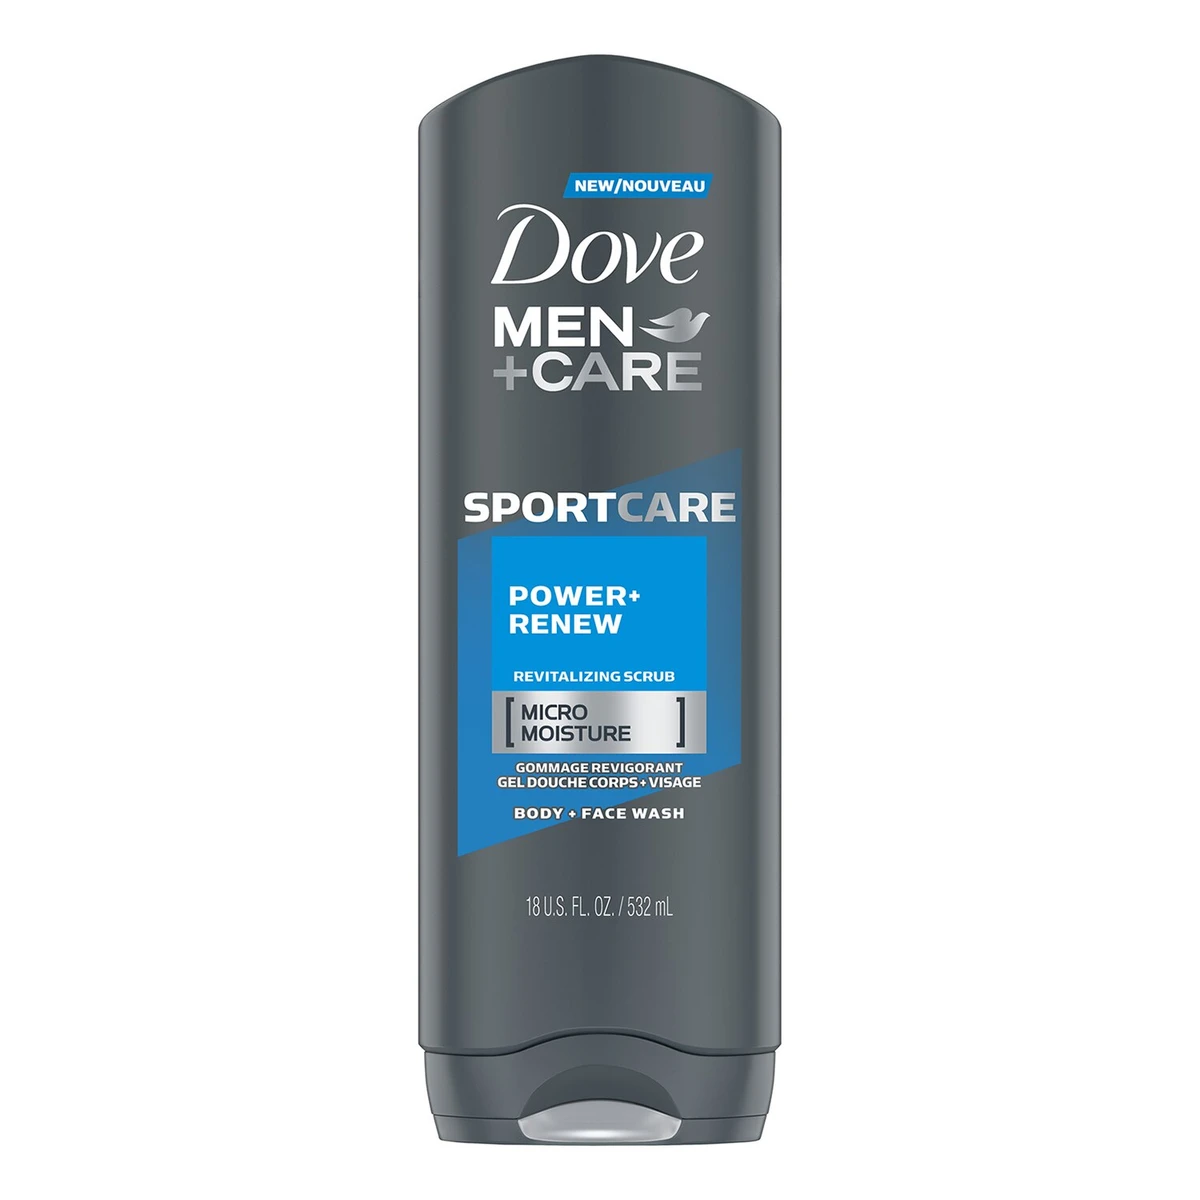 Dove Men+Care Sport Care Power + Renew Micro Moisture Revitalizing Body Wash  18 fl oz